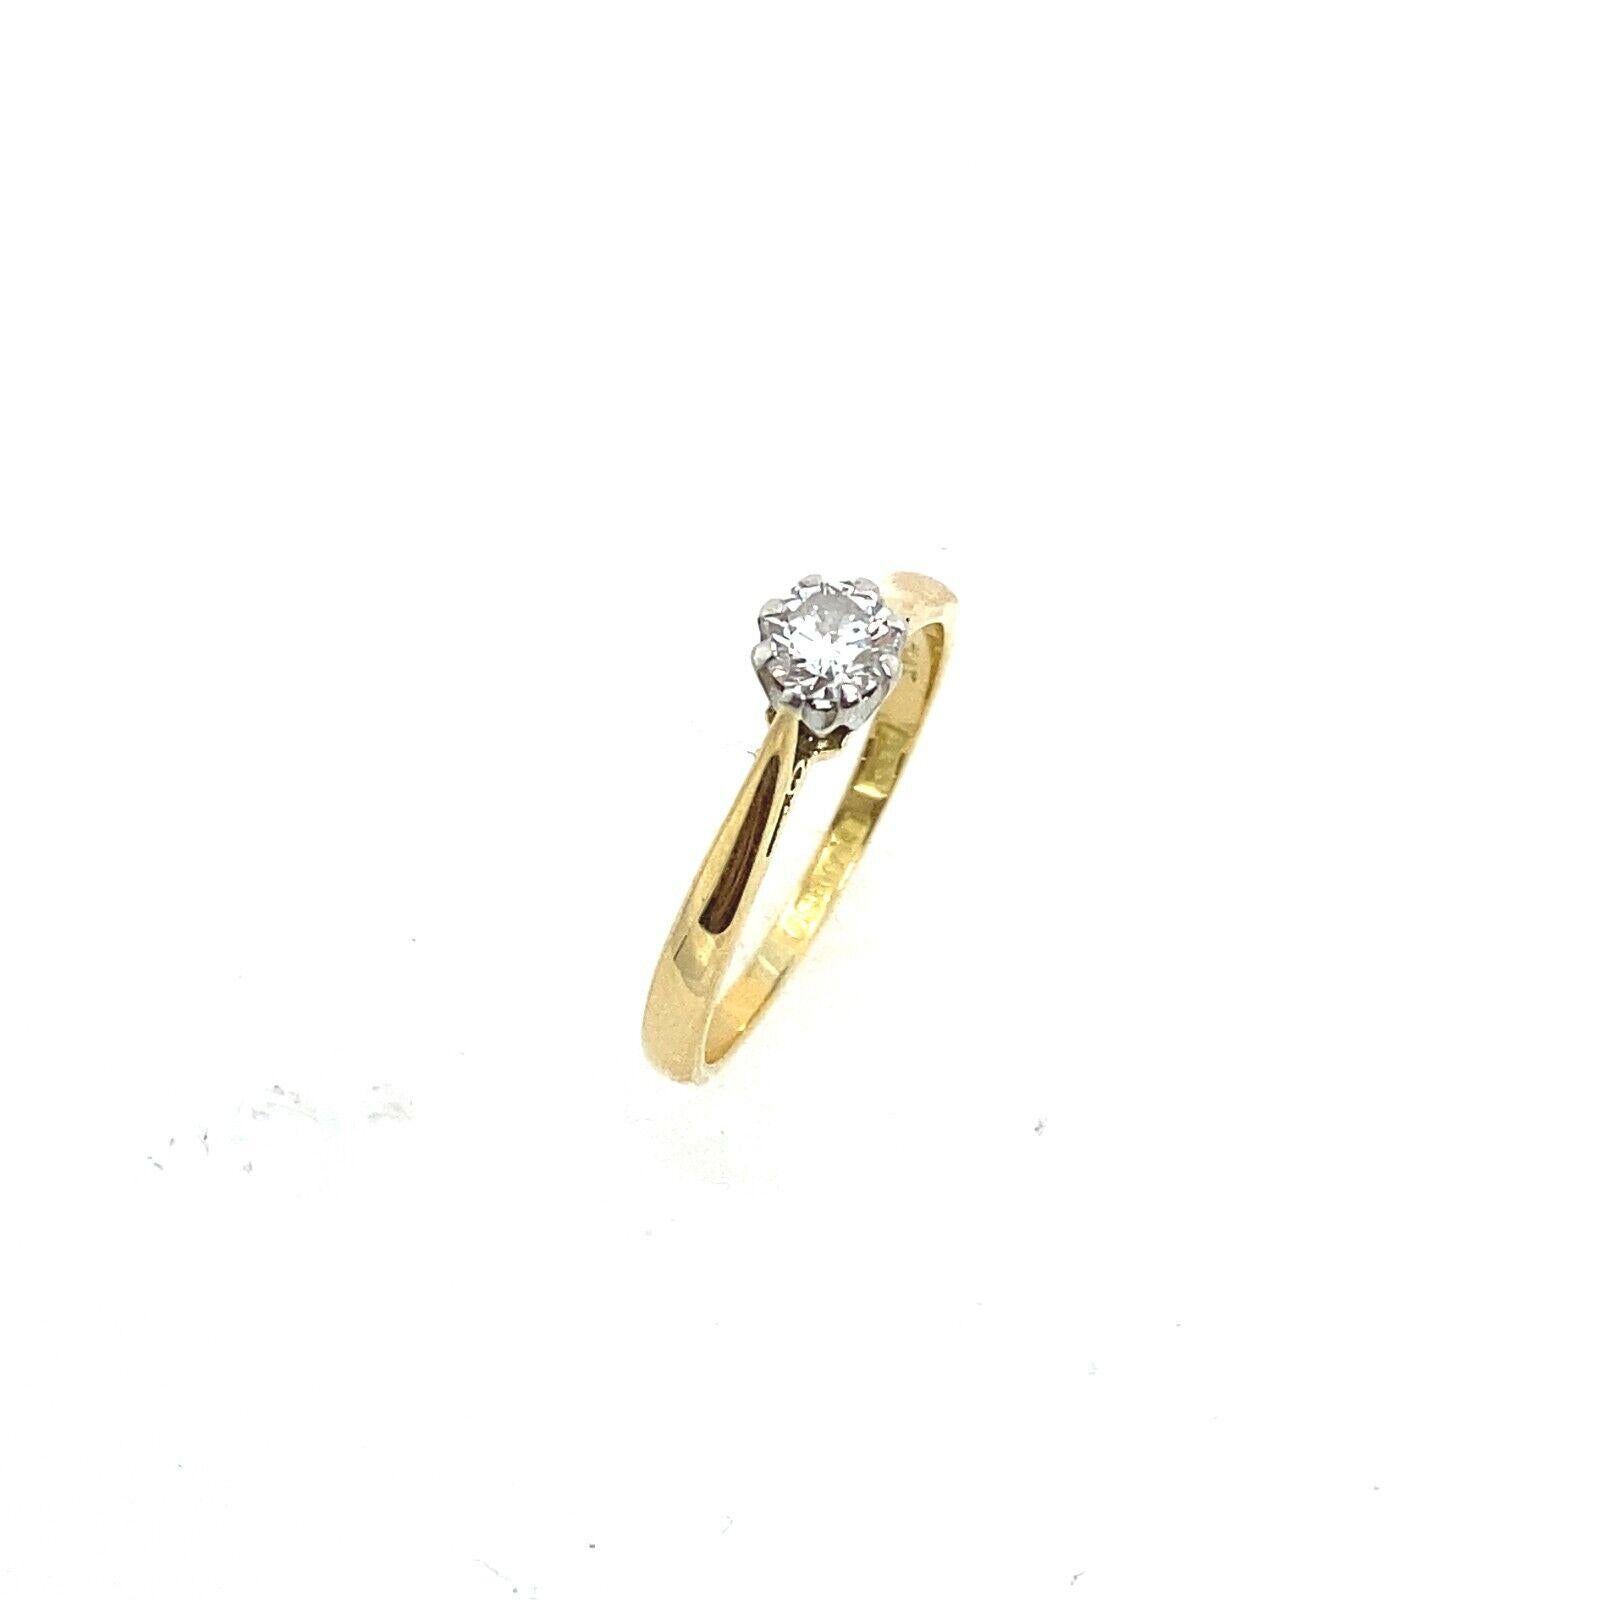 Dieser Solitär-Diamantring besteht aus einem runden Diamanten mit Brillantschliff und einer Reinheit von 0,25ct G-H/SI1 in einer Fassung aus 18ct Gelbgold und Platin. Das einzigartige Design dieses Rings macht ihn zu einem zeitlosen